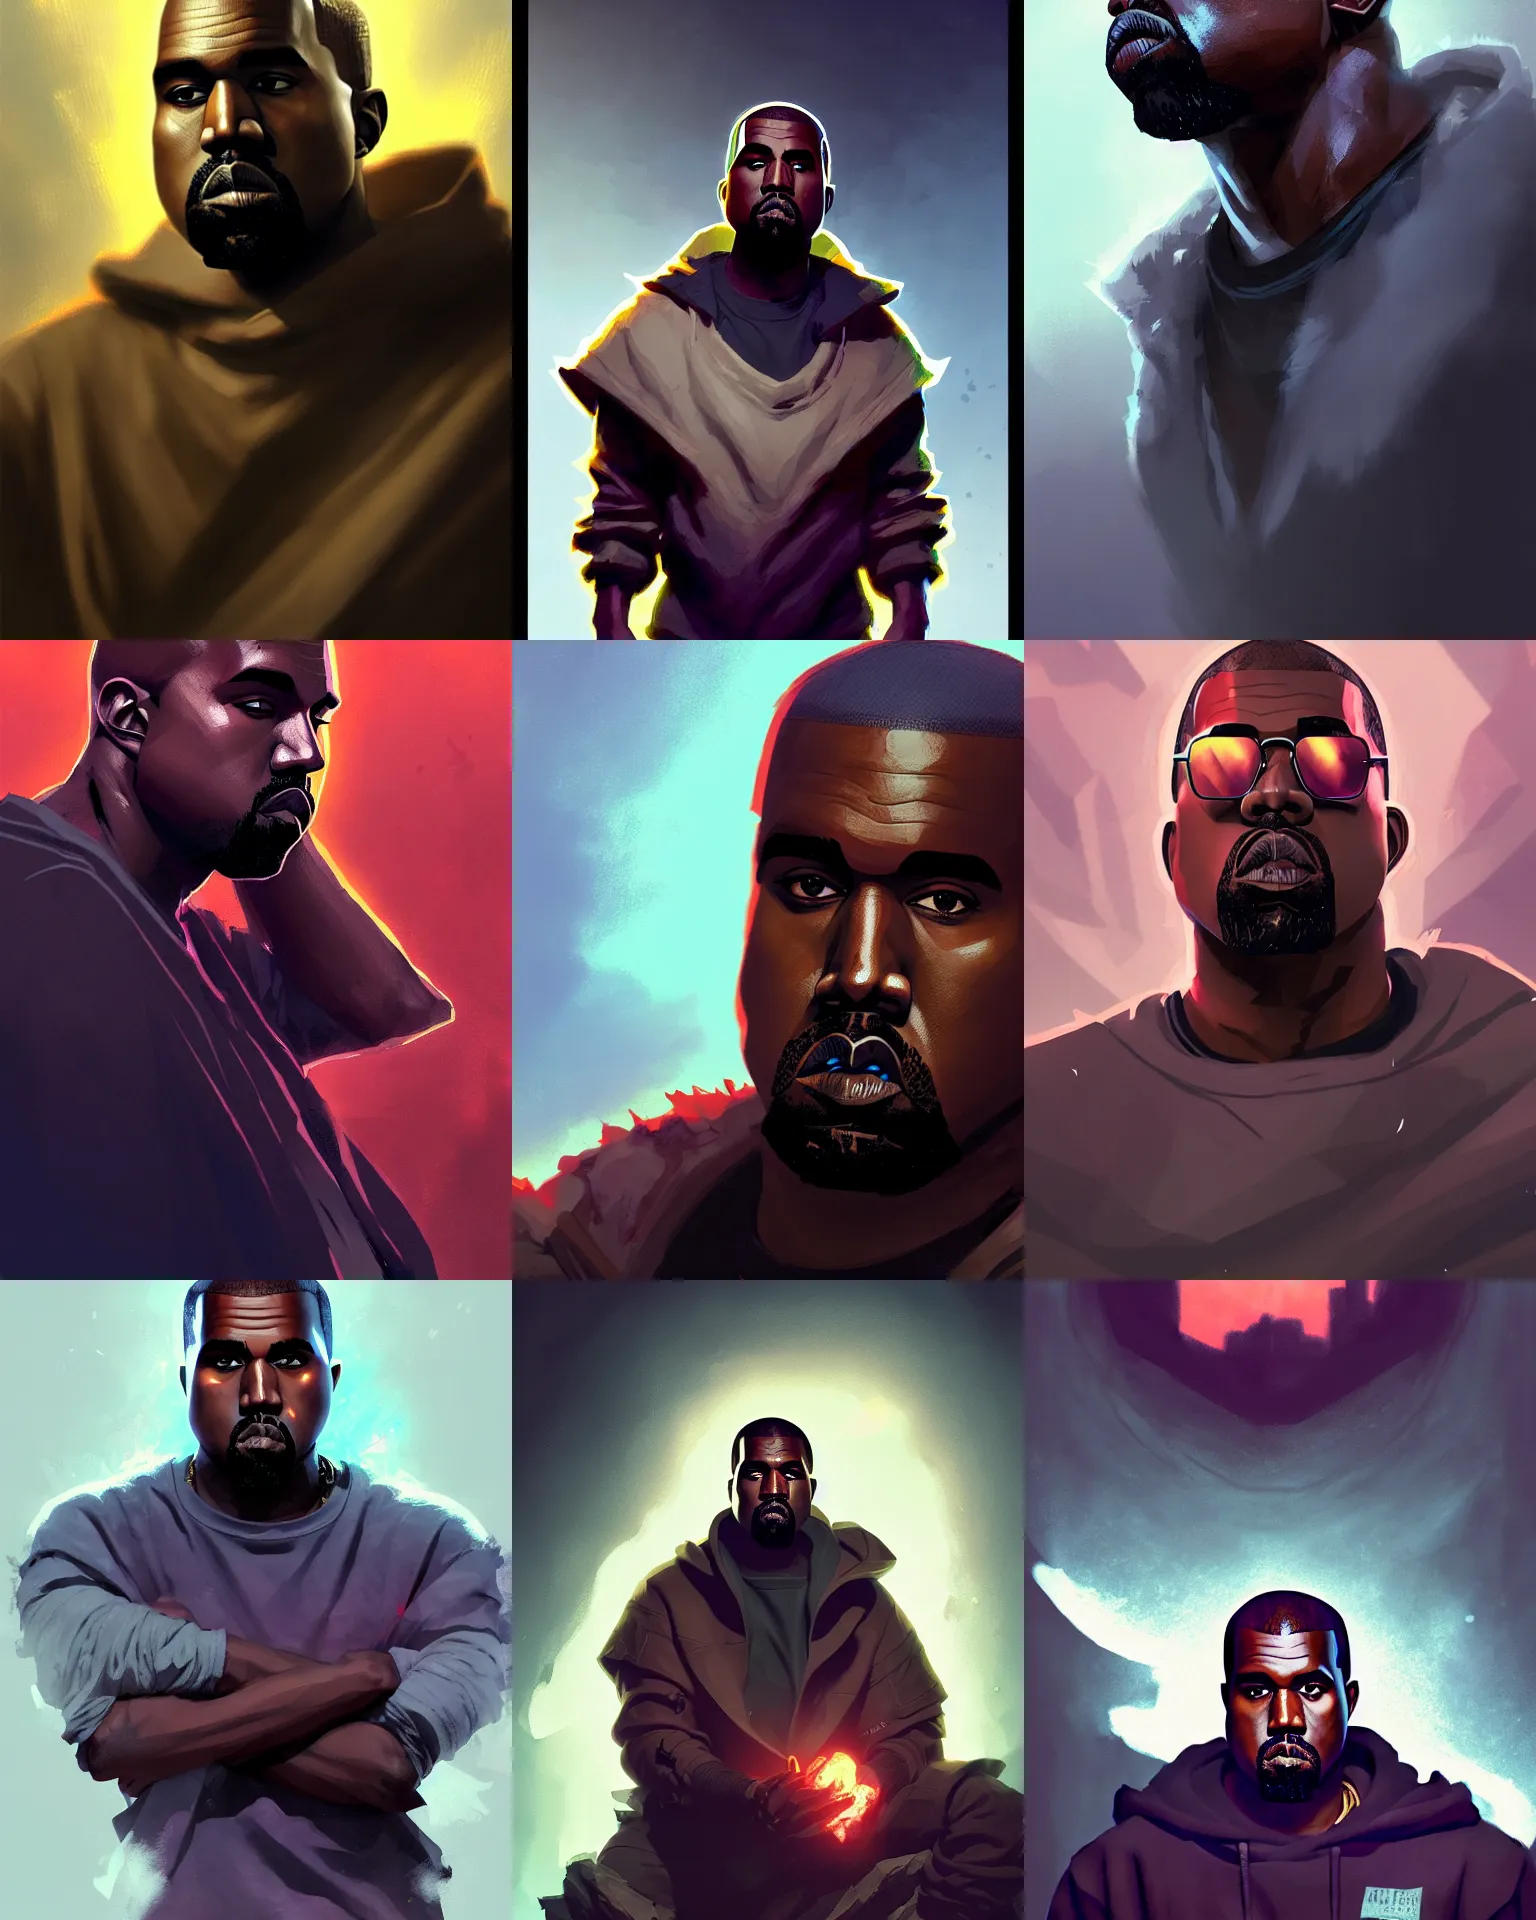 Prompt: Kanye West as a League of Legends champion, medium shot close up, details, sharp focus, illustration, by Jordan Grimmer and greg rutkowski, Trending artstation, digital Art